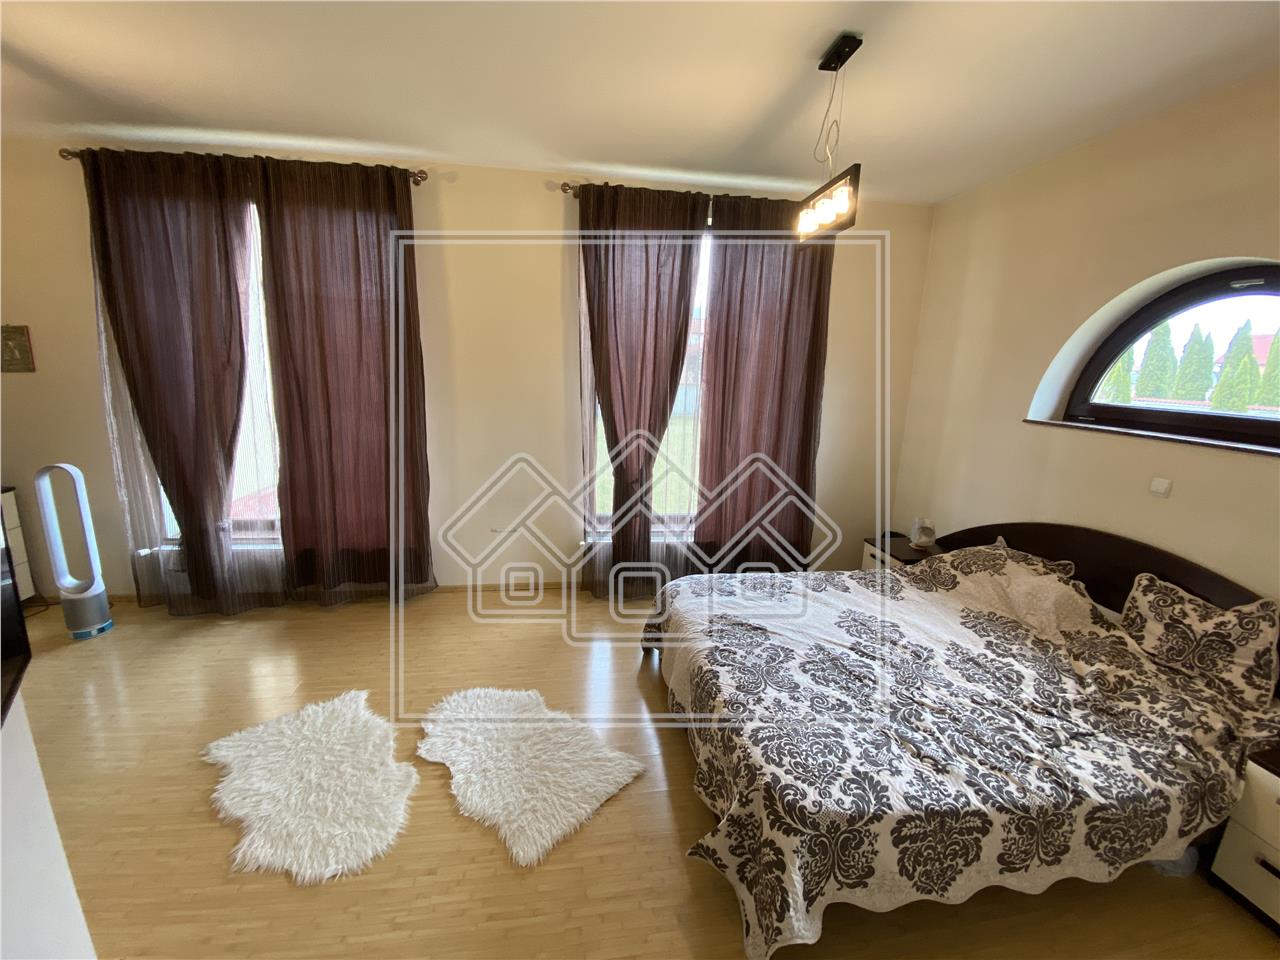 Haus zum Verkauf in Alba Iulia - 400 qm - 2 Garagen - Cetate-Bereich